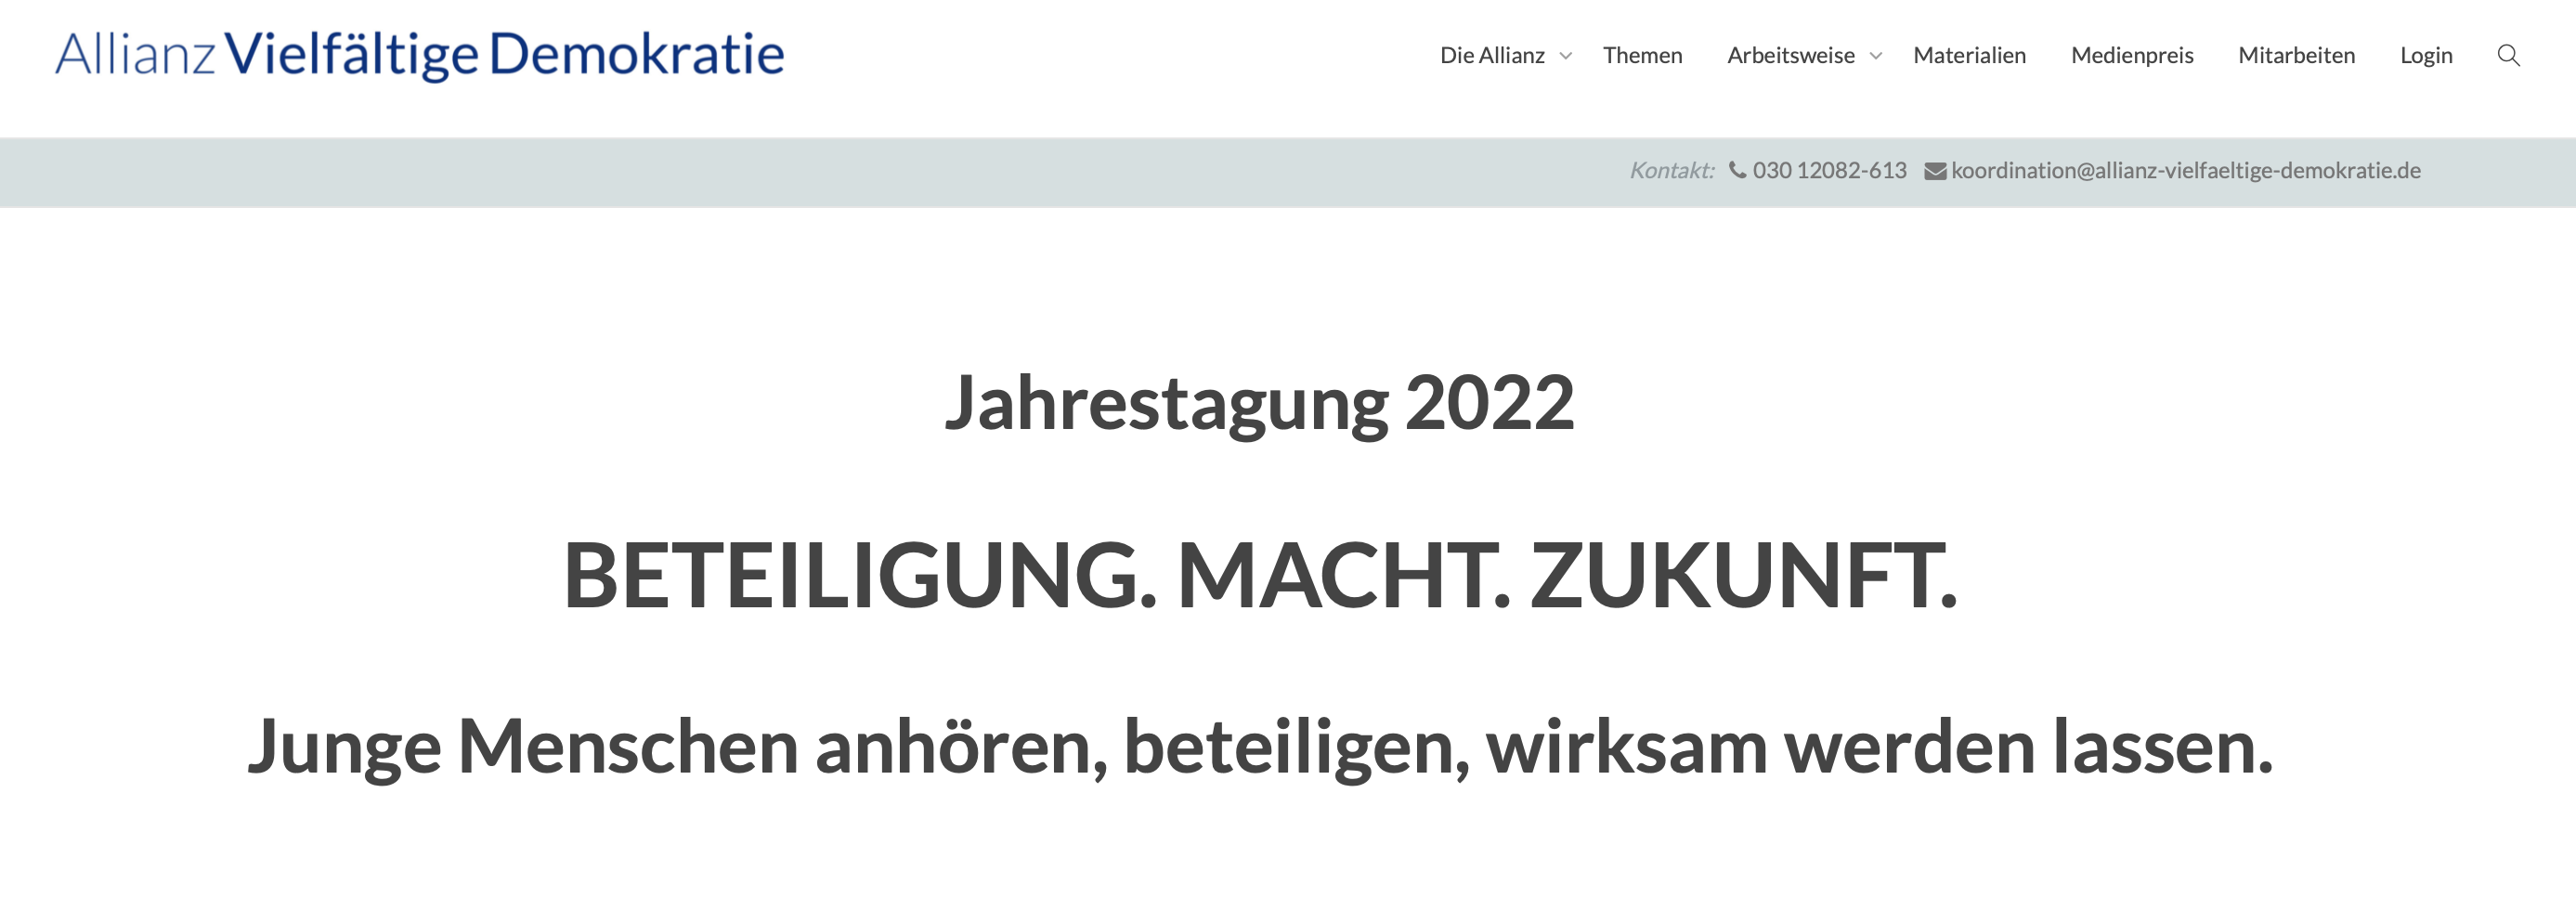 Allianz Vielfältige Demokratie:           23. und 24. Juni 2022.                       Tagung in Mainz.